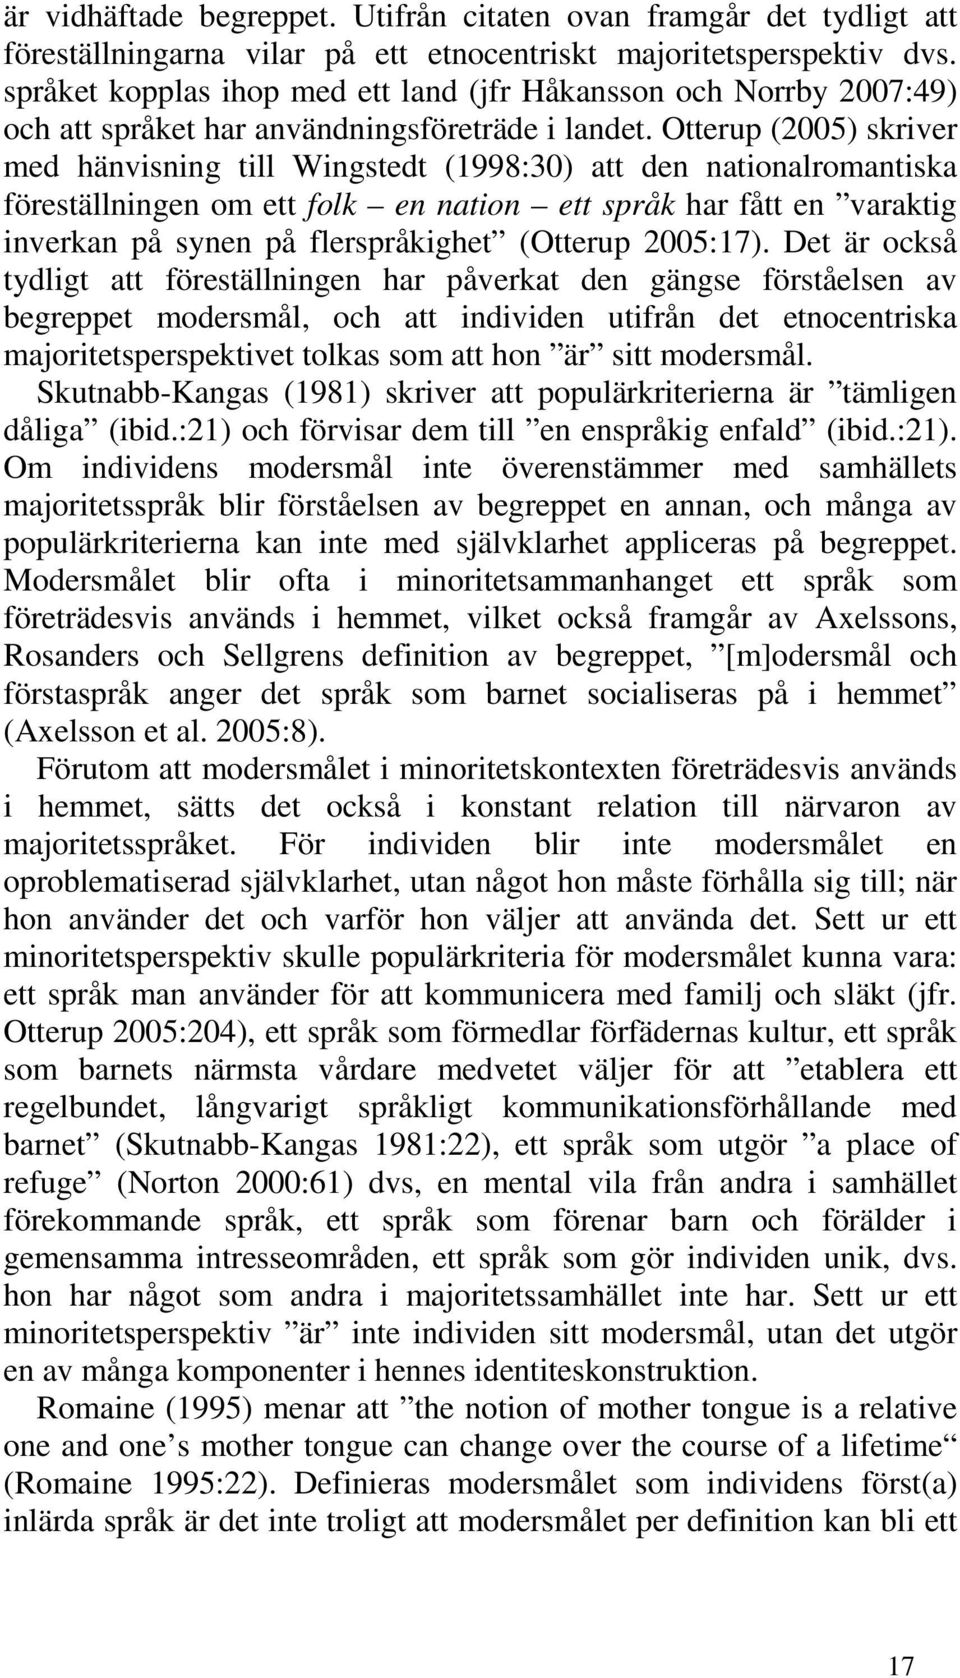 Otterup (2005) skriver med hänvisning till Wingstedt (1998:30) att den nationalromantiska föreställningen om ett folk en nation ett språk har fått en varaktig inverkan på synen på flerspråkighet